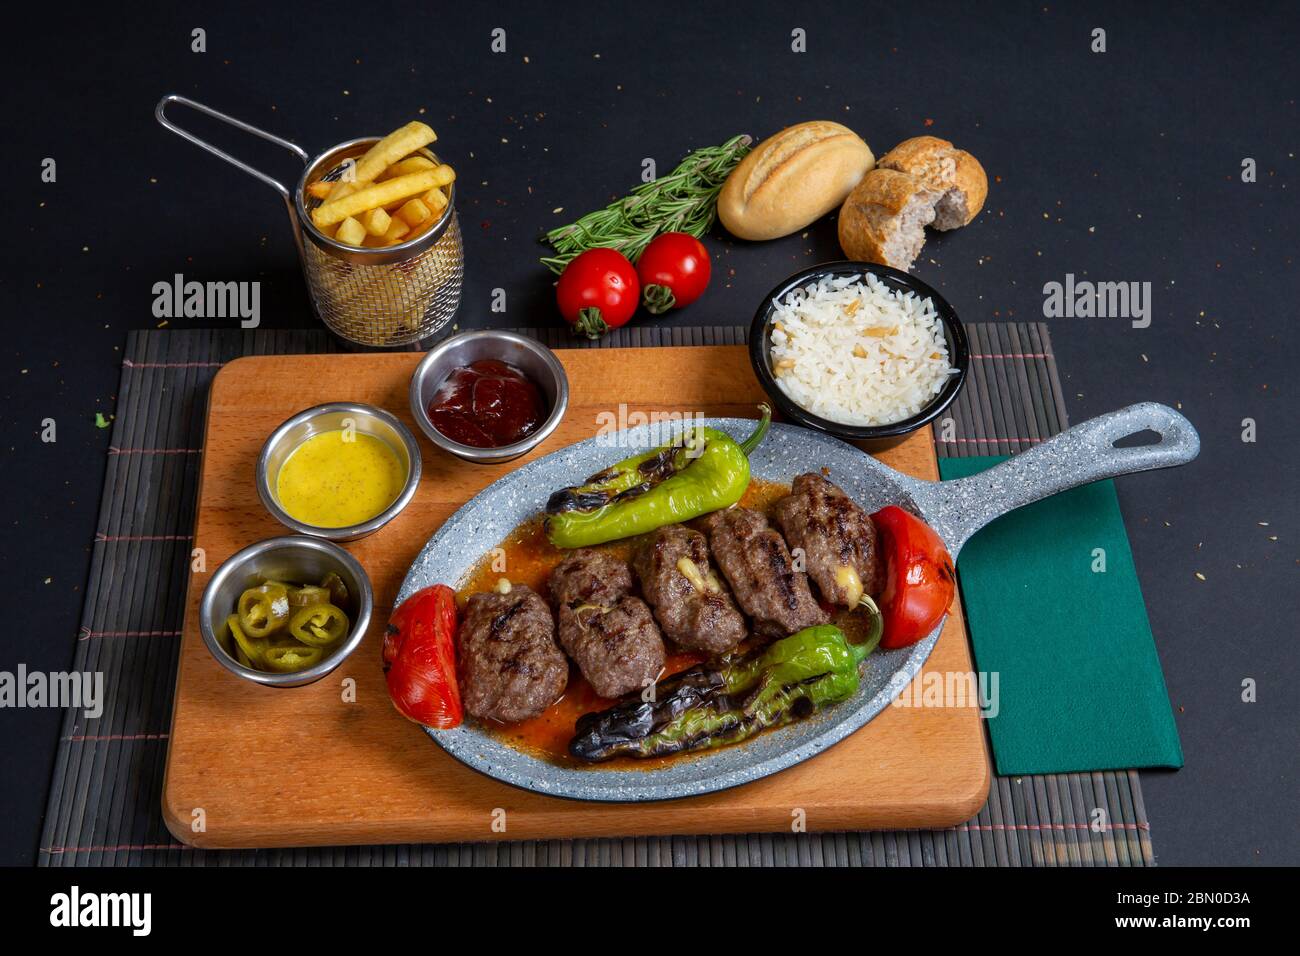 Boulettes de bœuf rôties faites maison dans une poêle en fonte sur une table en bois dans la cuisine, persil frais, fourchette vintage Banque D'Images